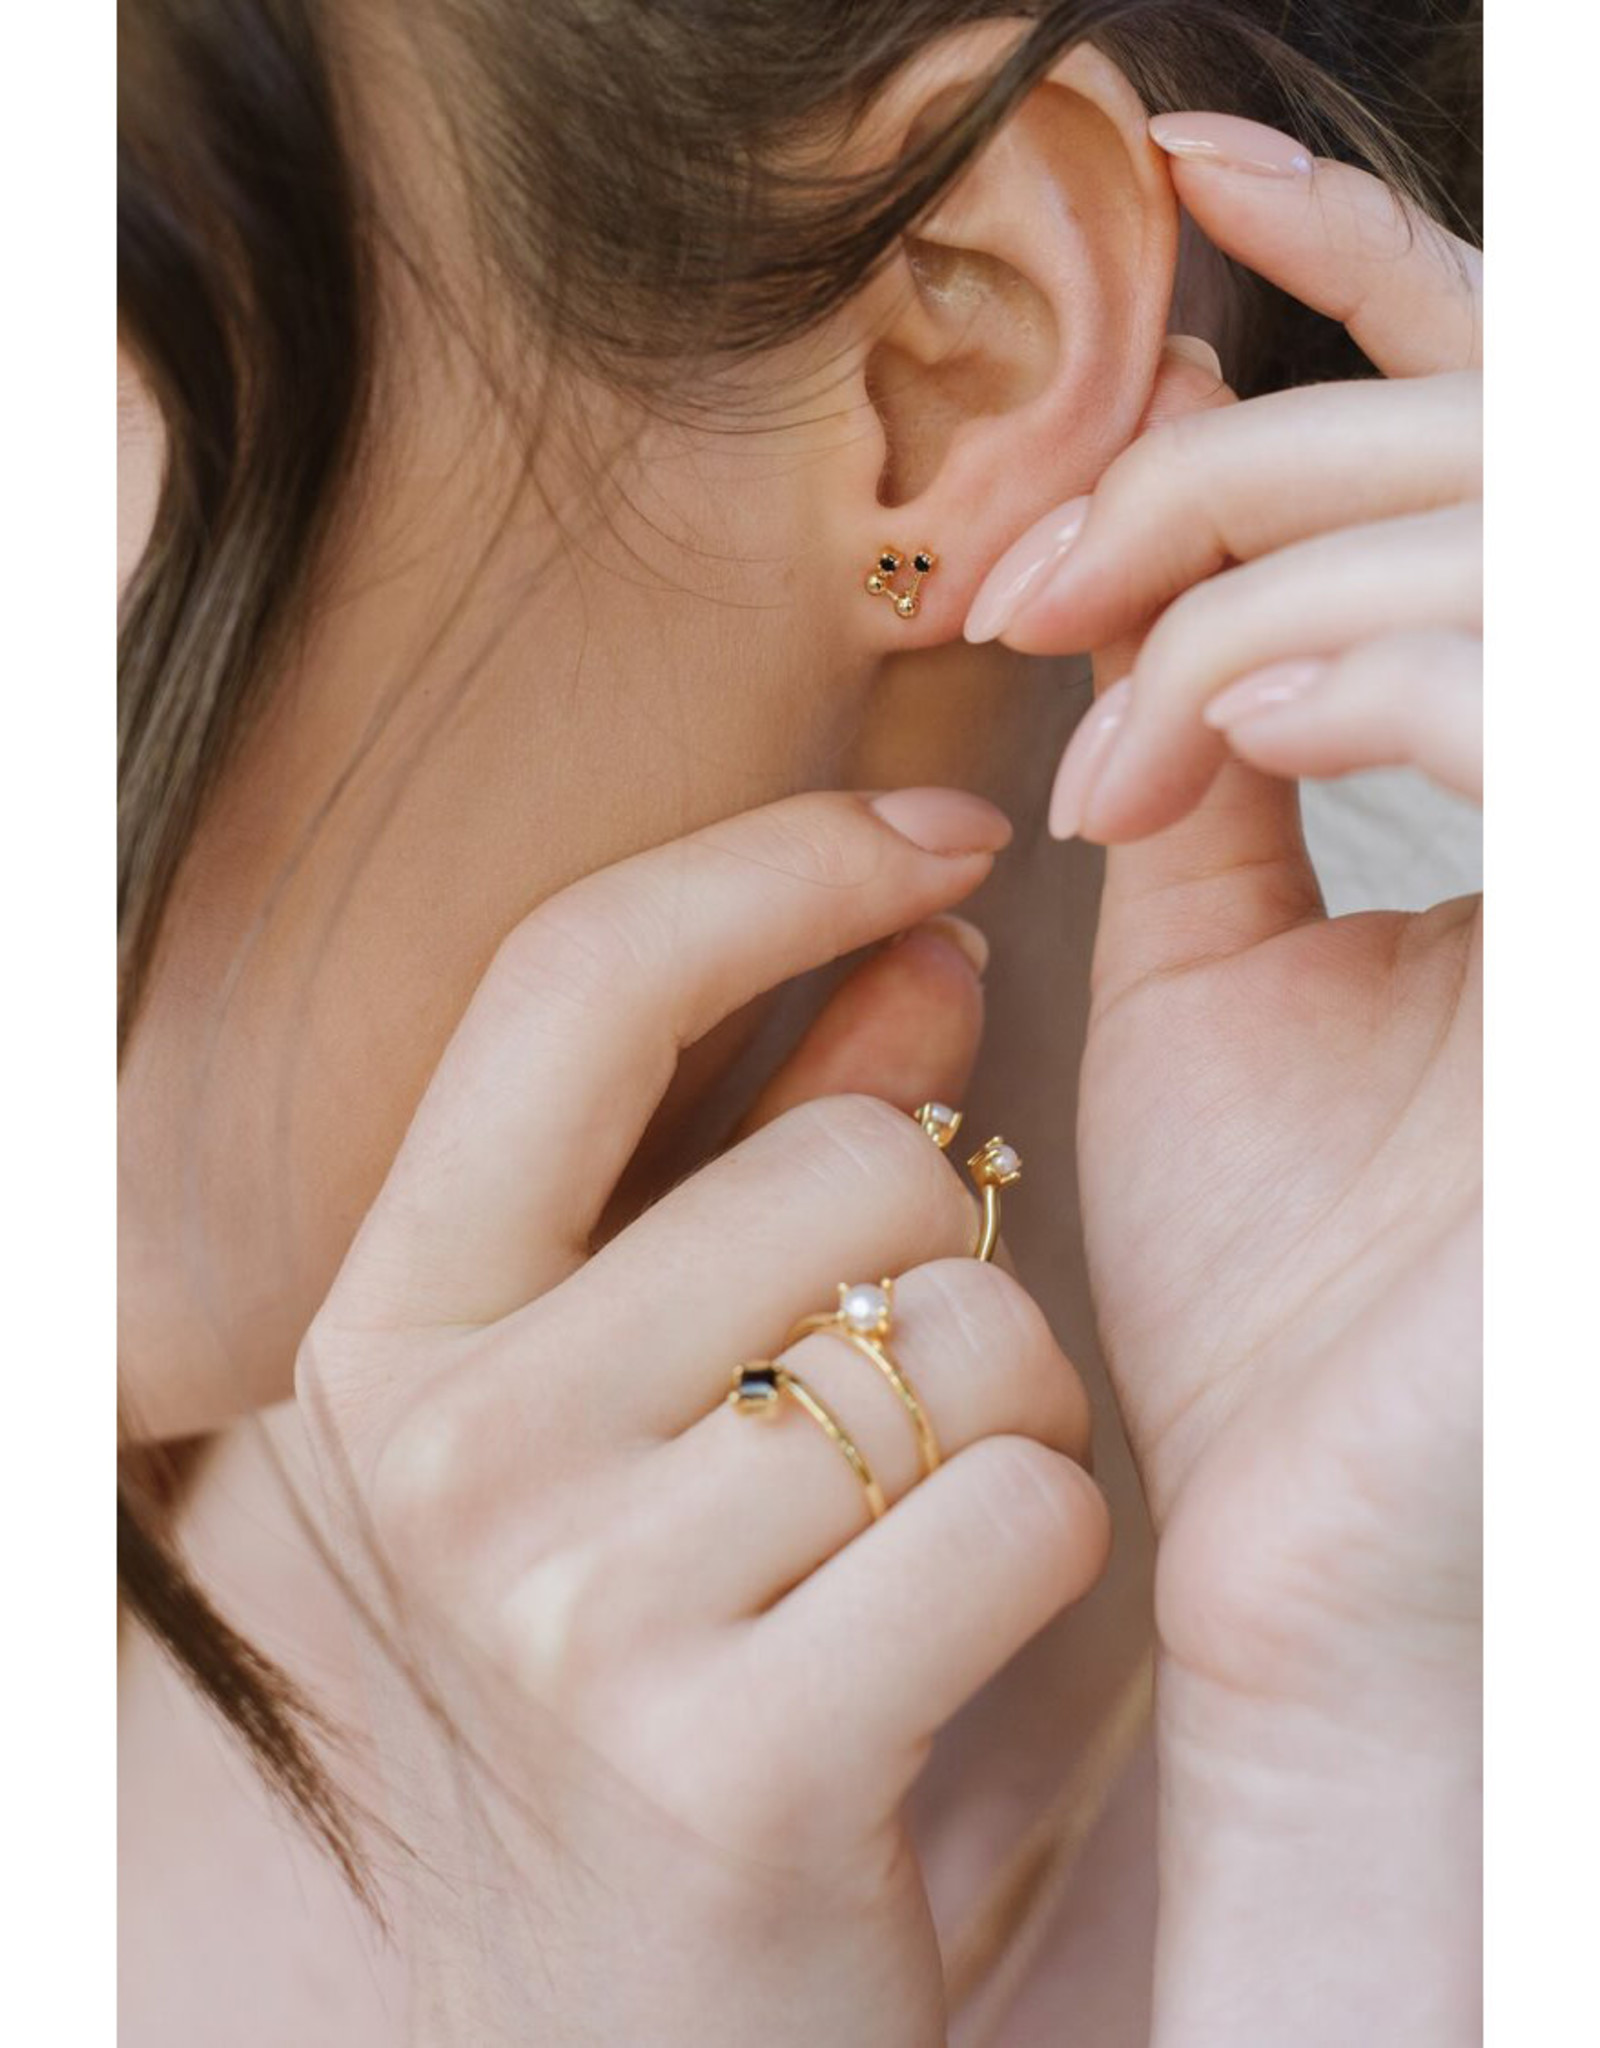 Sarah Mulder Jewelry Gold Cassie Ring - Rose Quartz + Pearl - 8